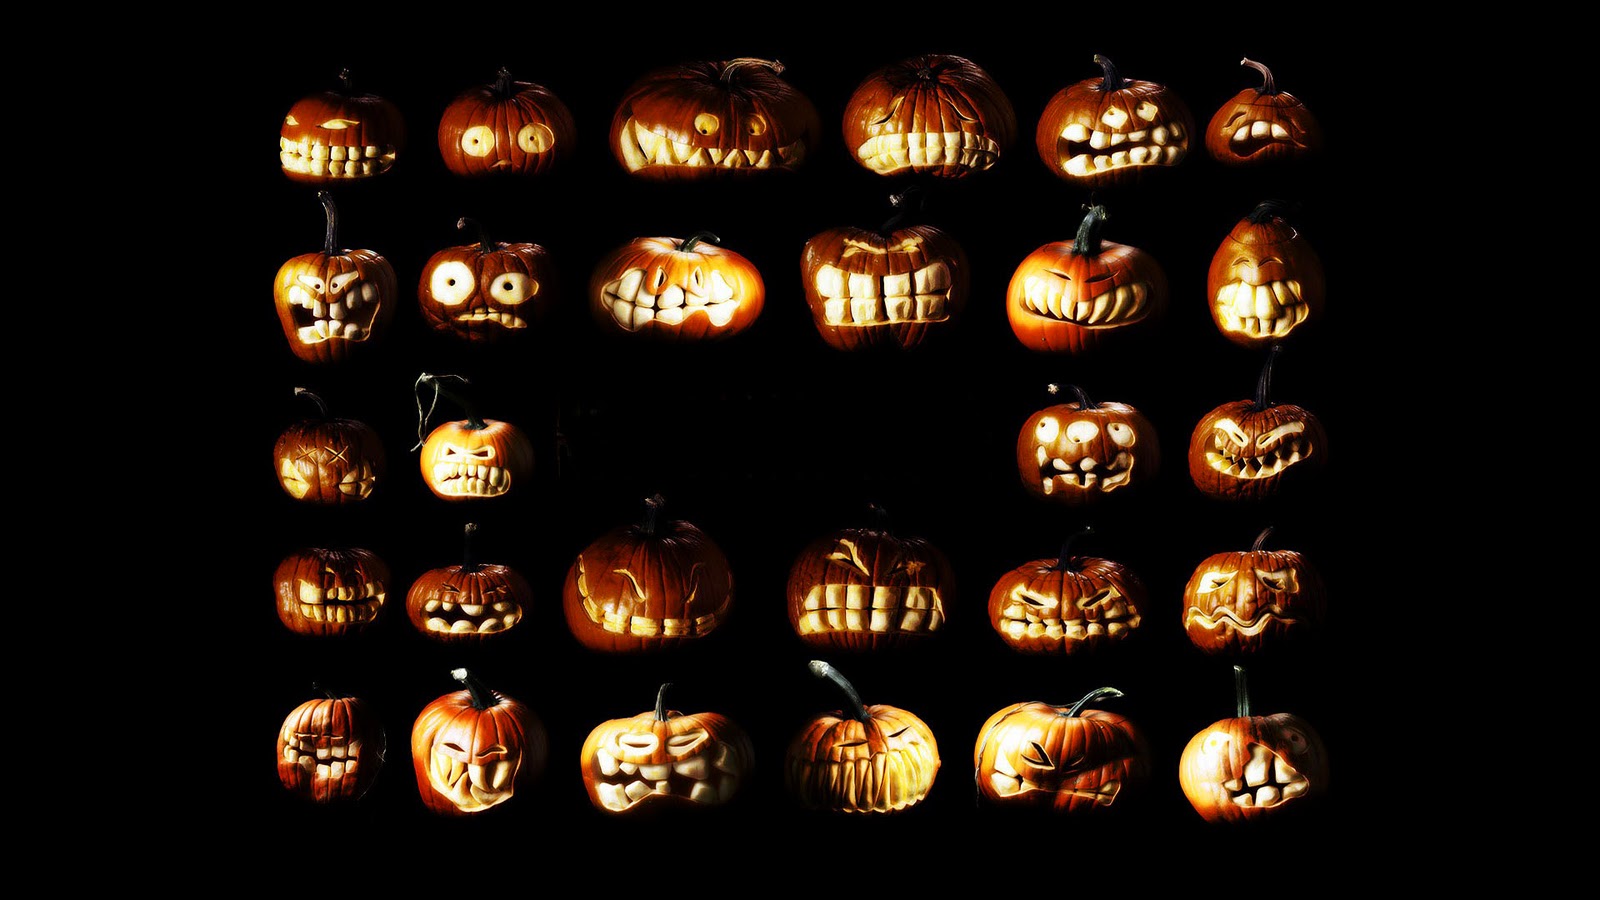 miglior sfondo di halloween,lanterna,illuminazione,arancia,testo,font